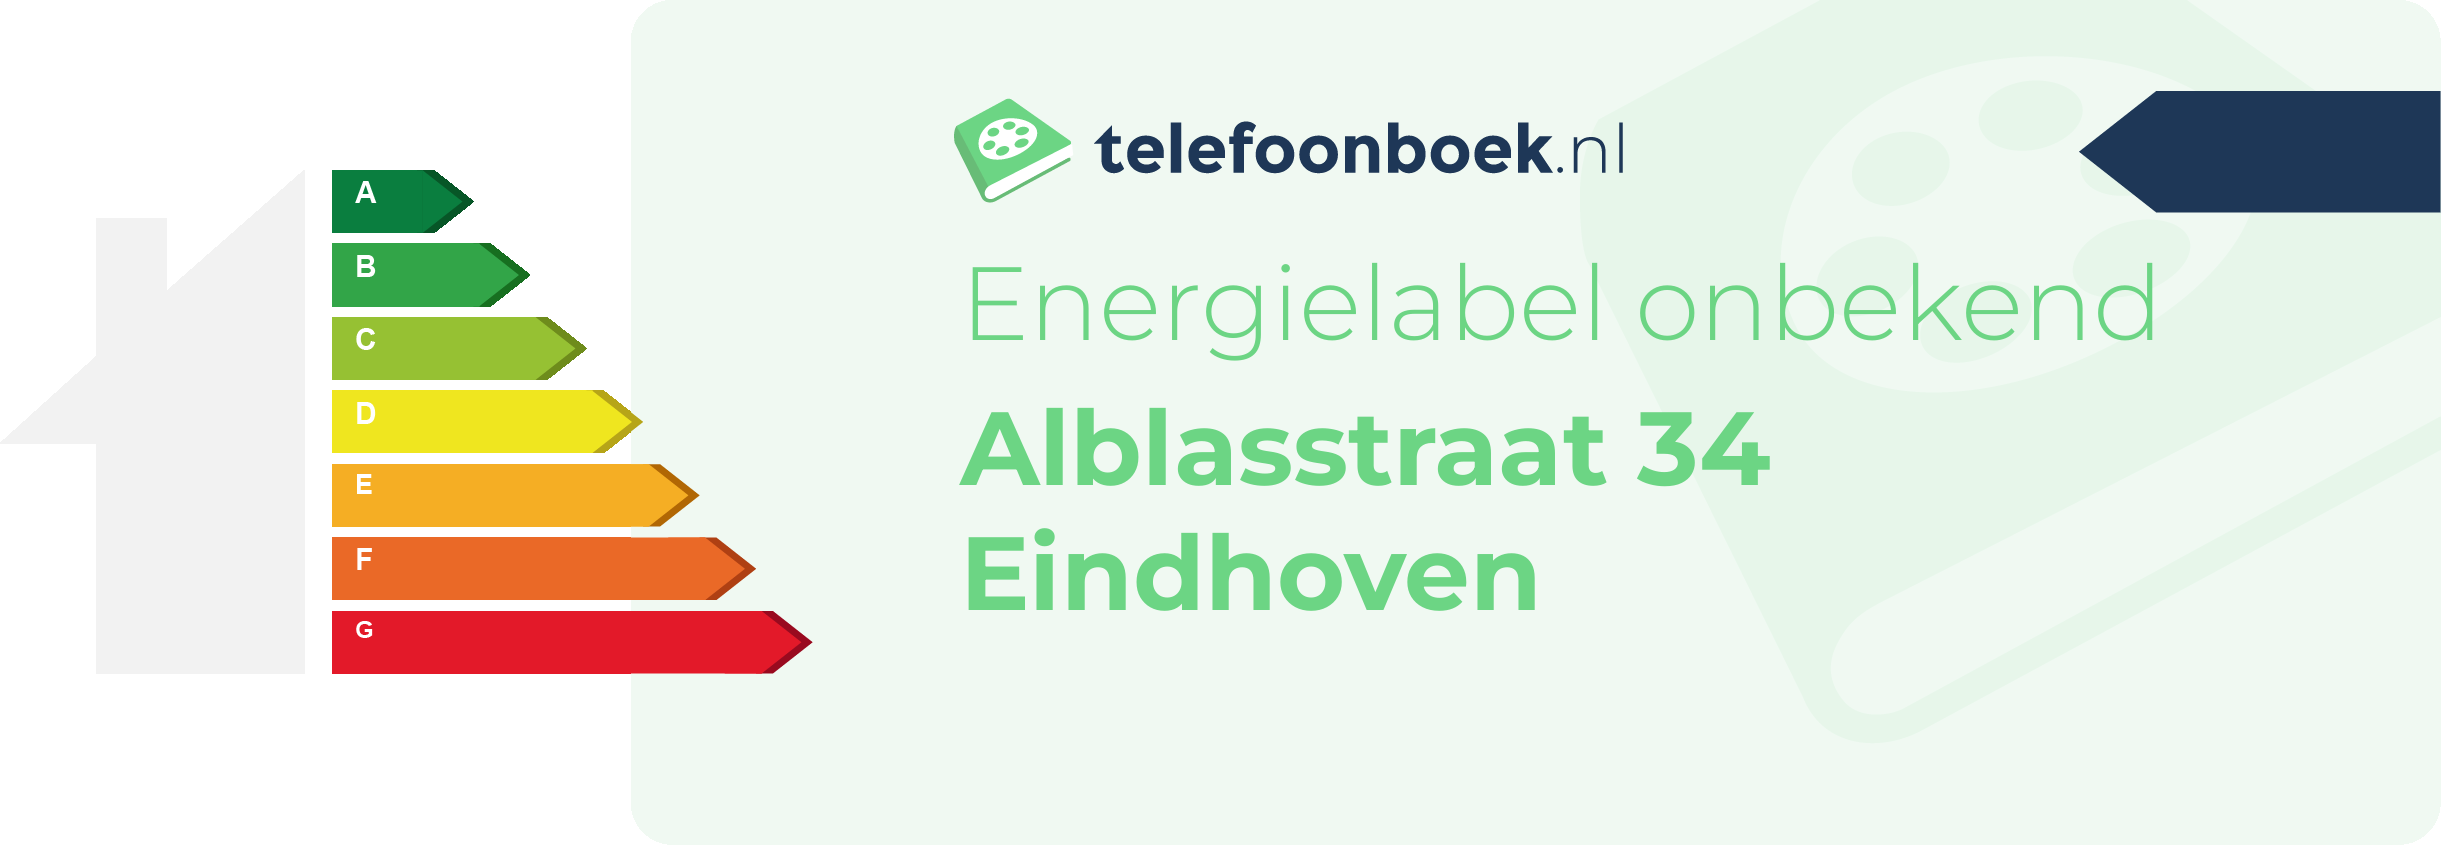 Energielabel Alblasstraat 34 Eindhoven